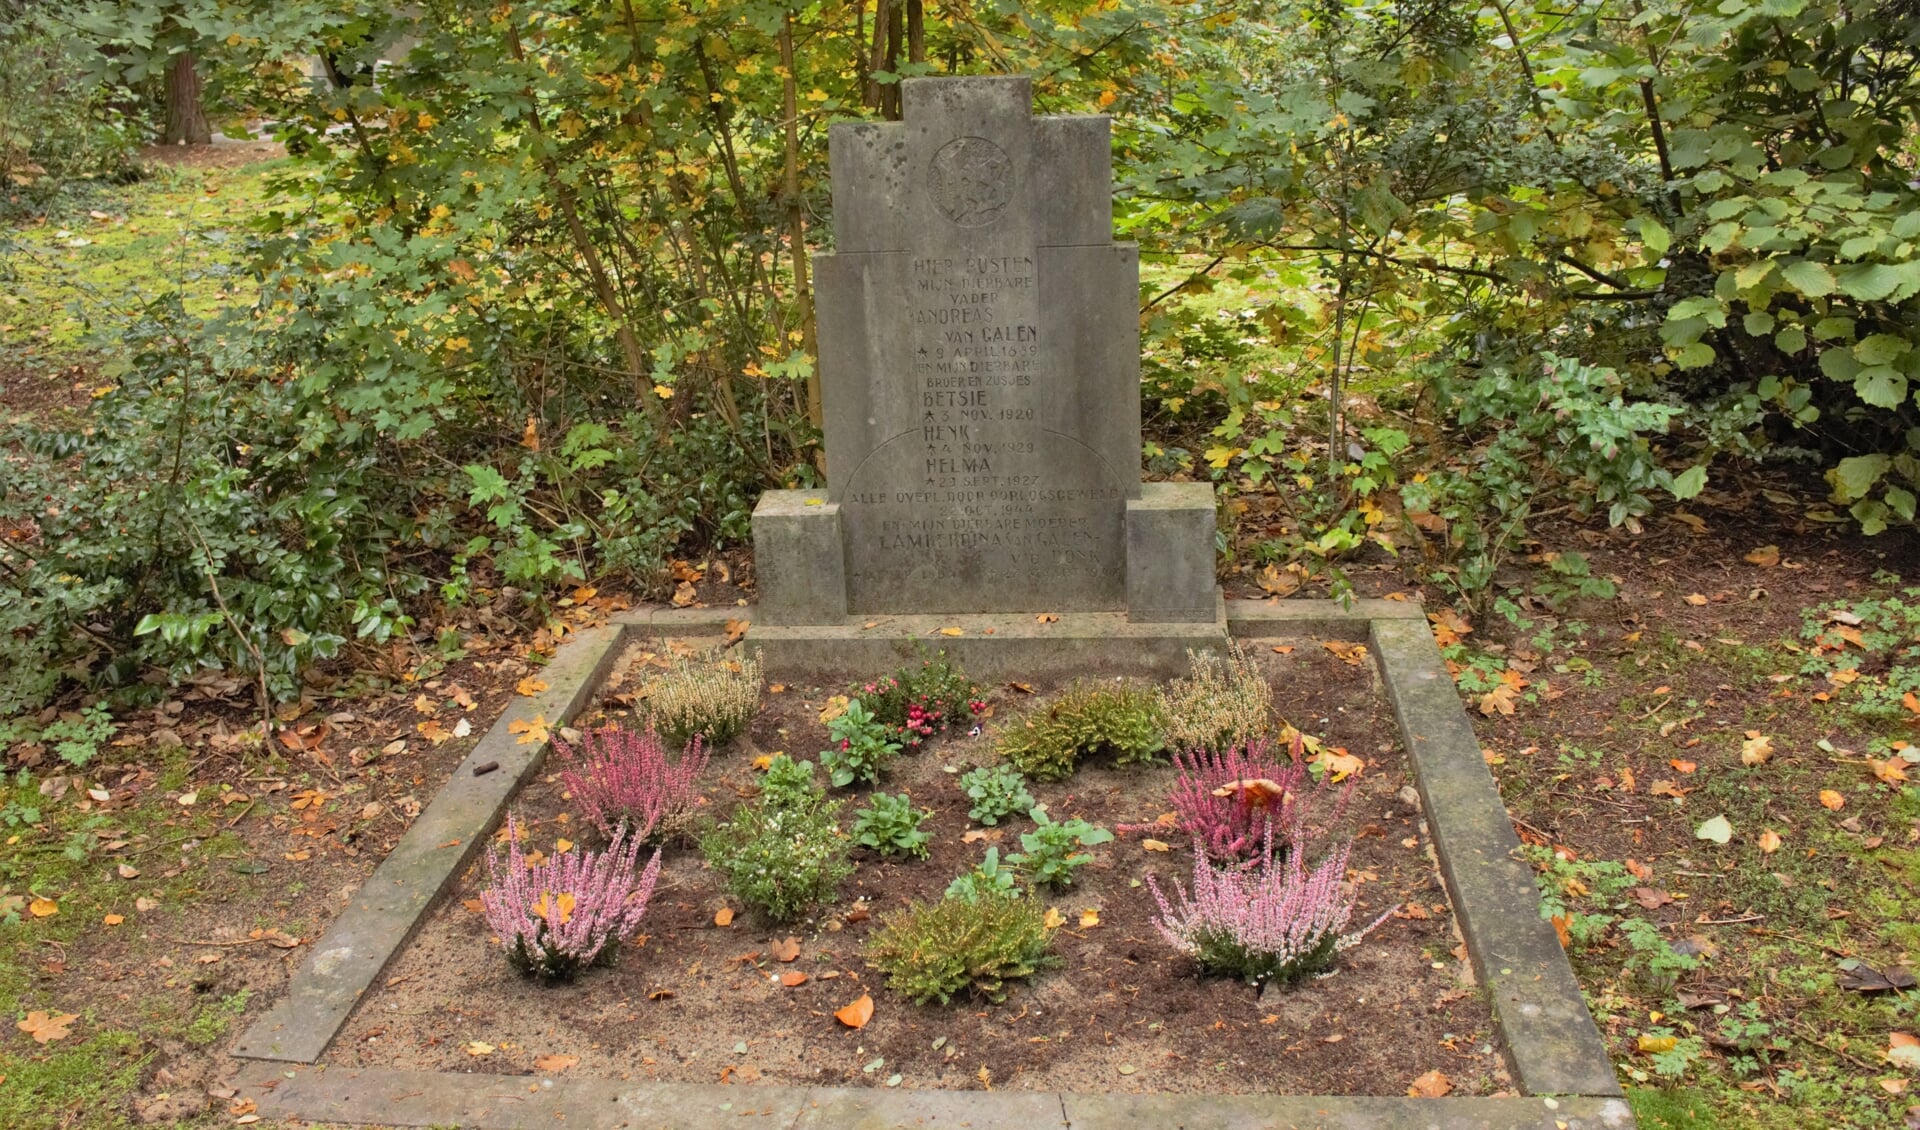 Het graf van de familie Van Galen. Vader Dries, zoon Henk en dochters Helma en Betsie overleden bij het vergisbombardement in 1944.